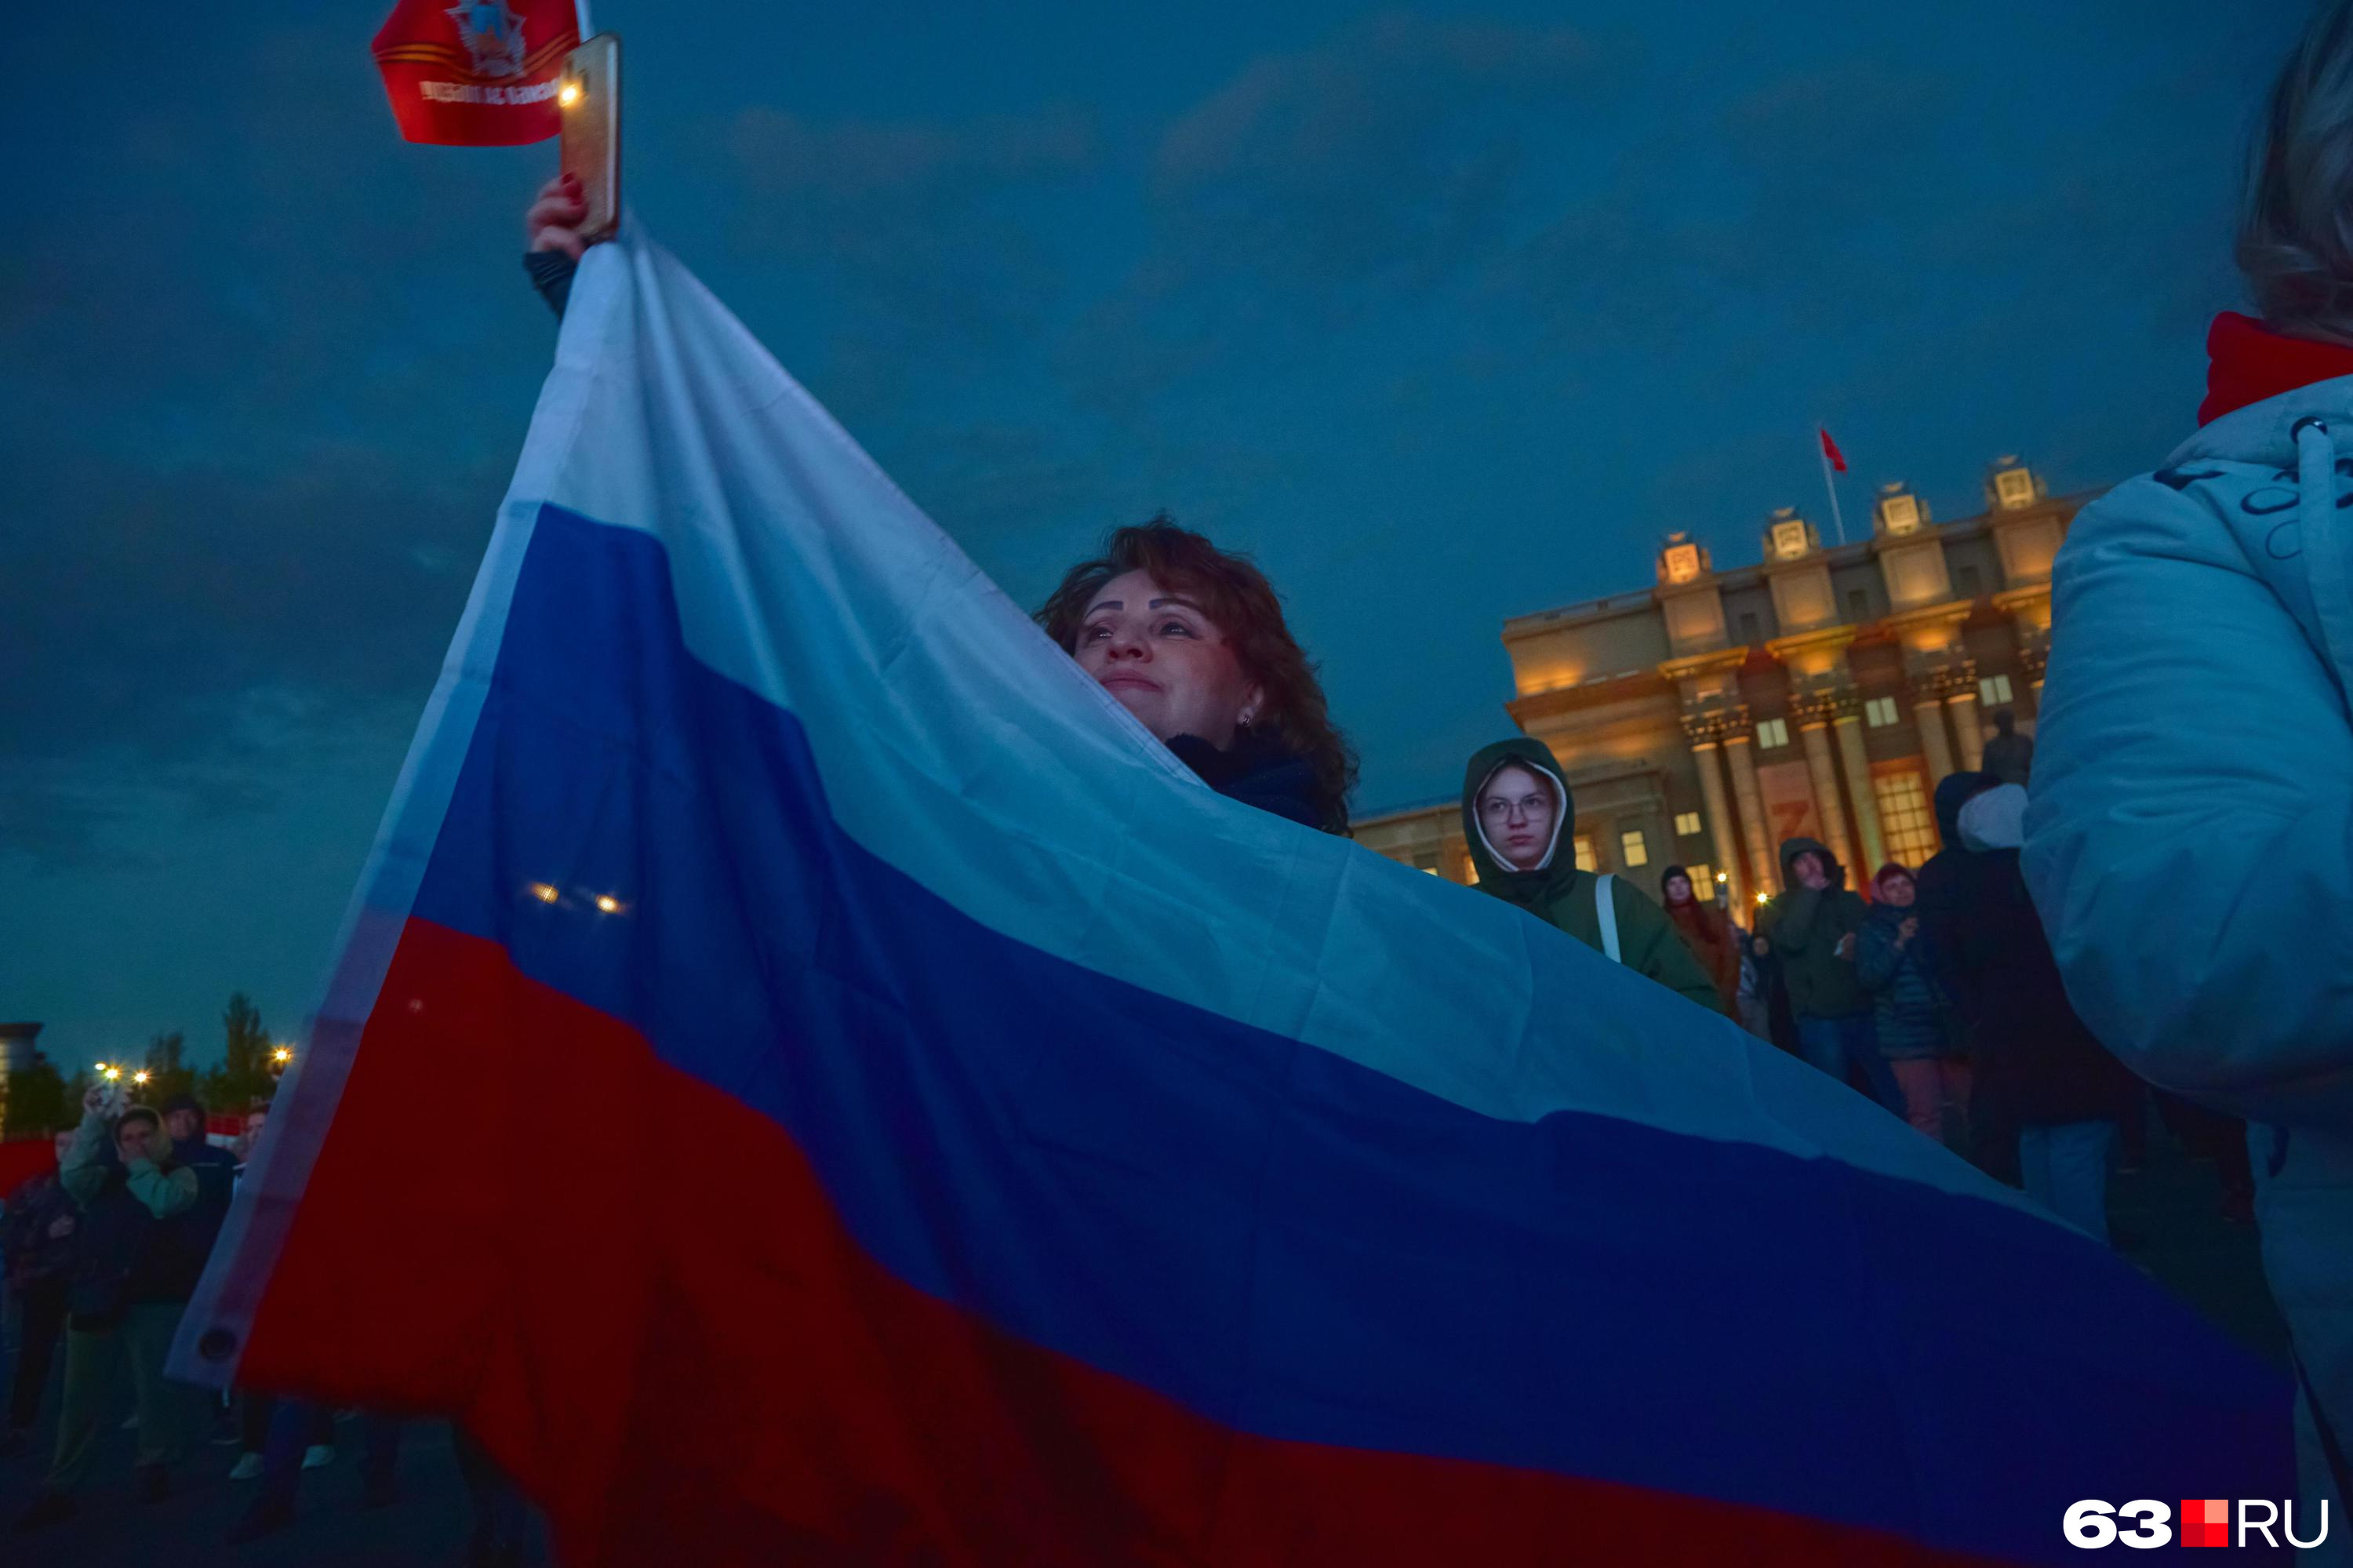 Автопробег и триколор: в Новосибирске ищут организатора праздника на День флага России — что там будет